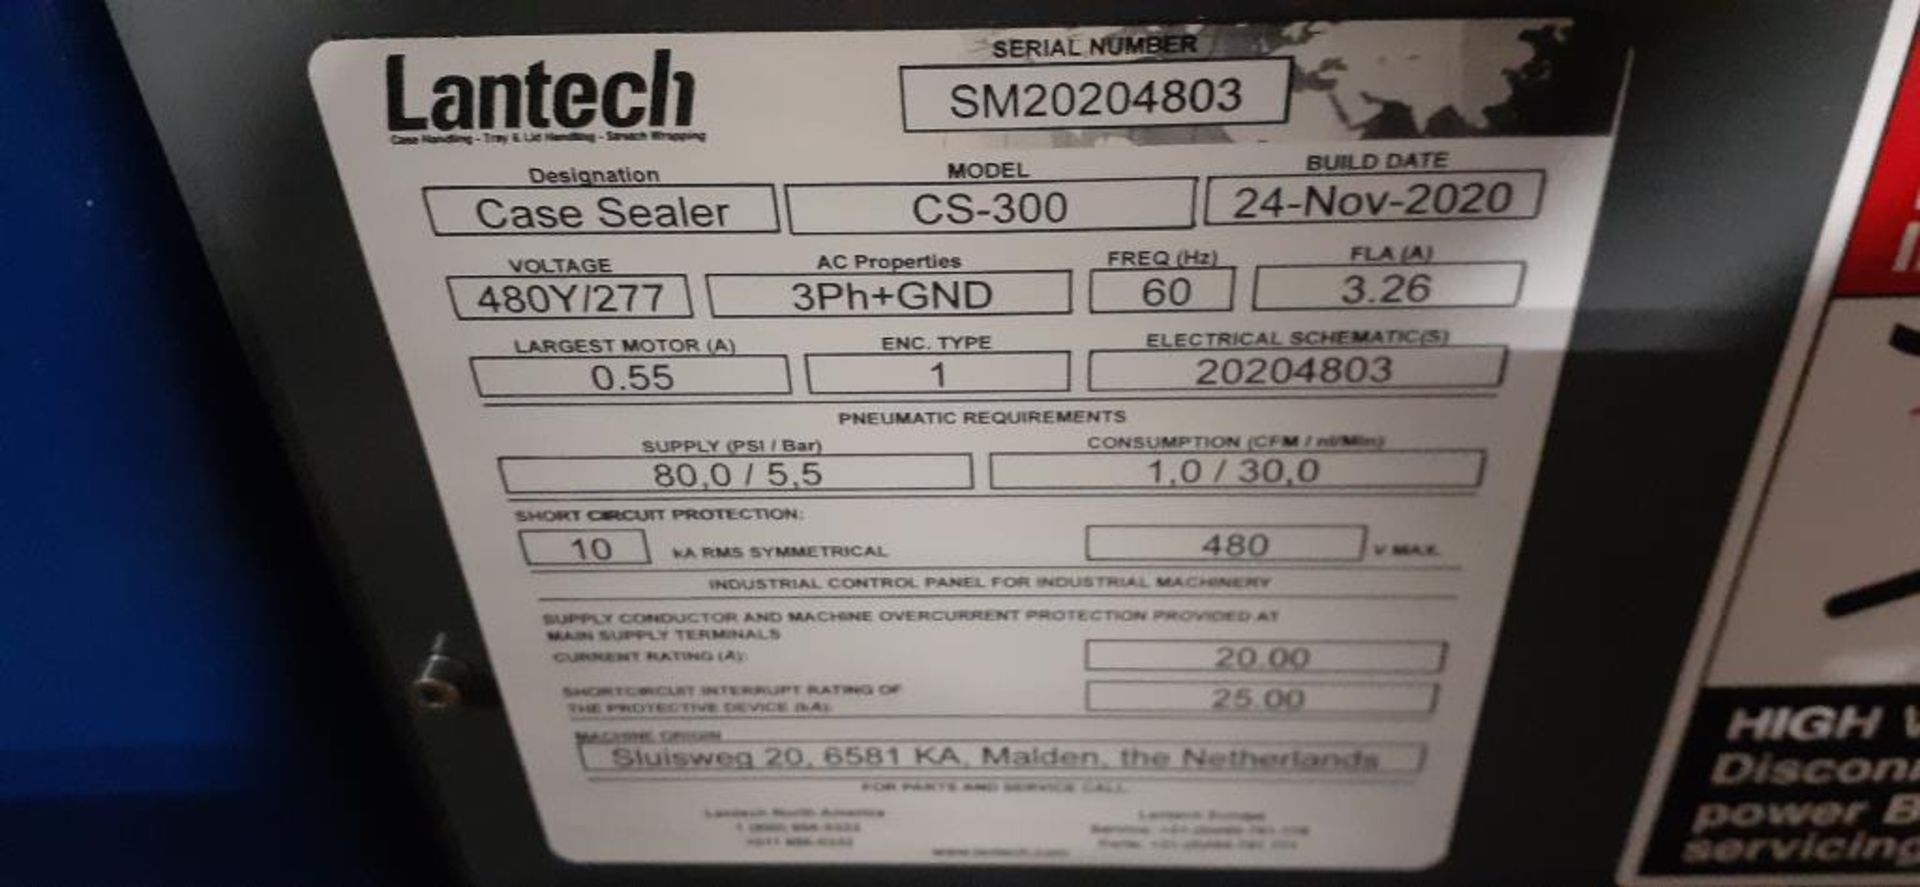 Lantech Case Sealer - Image 7 of 8